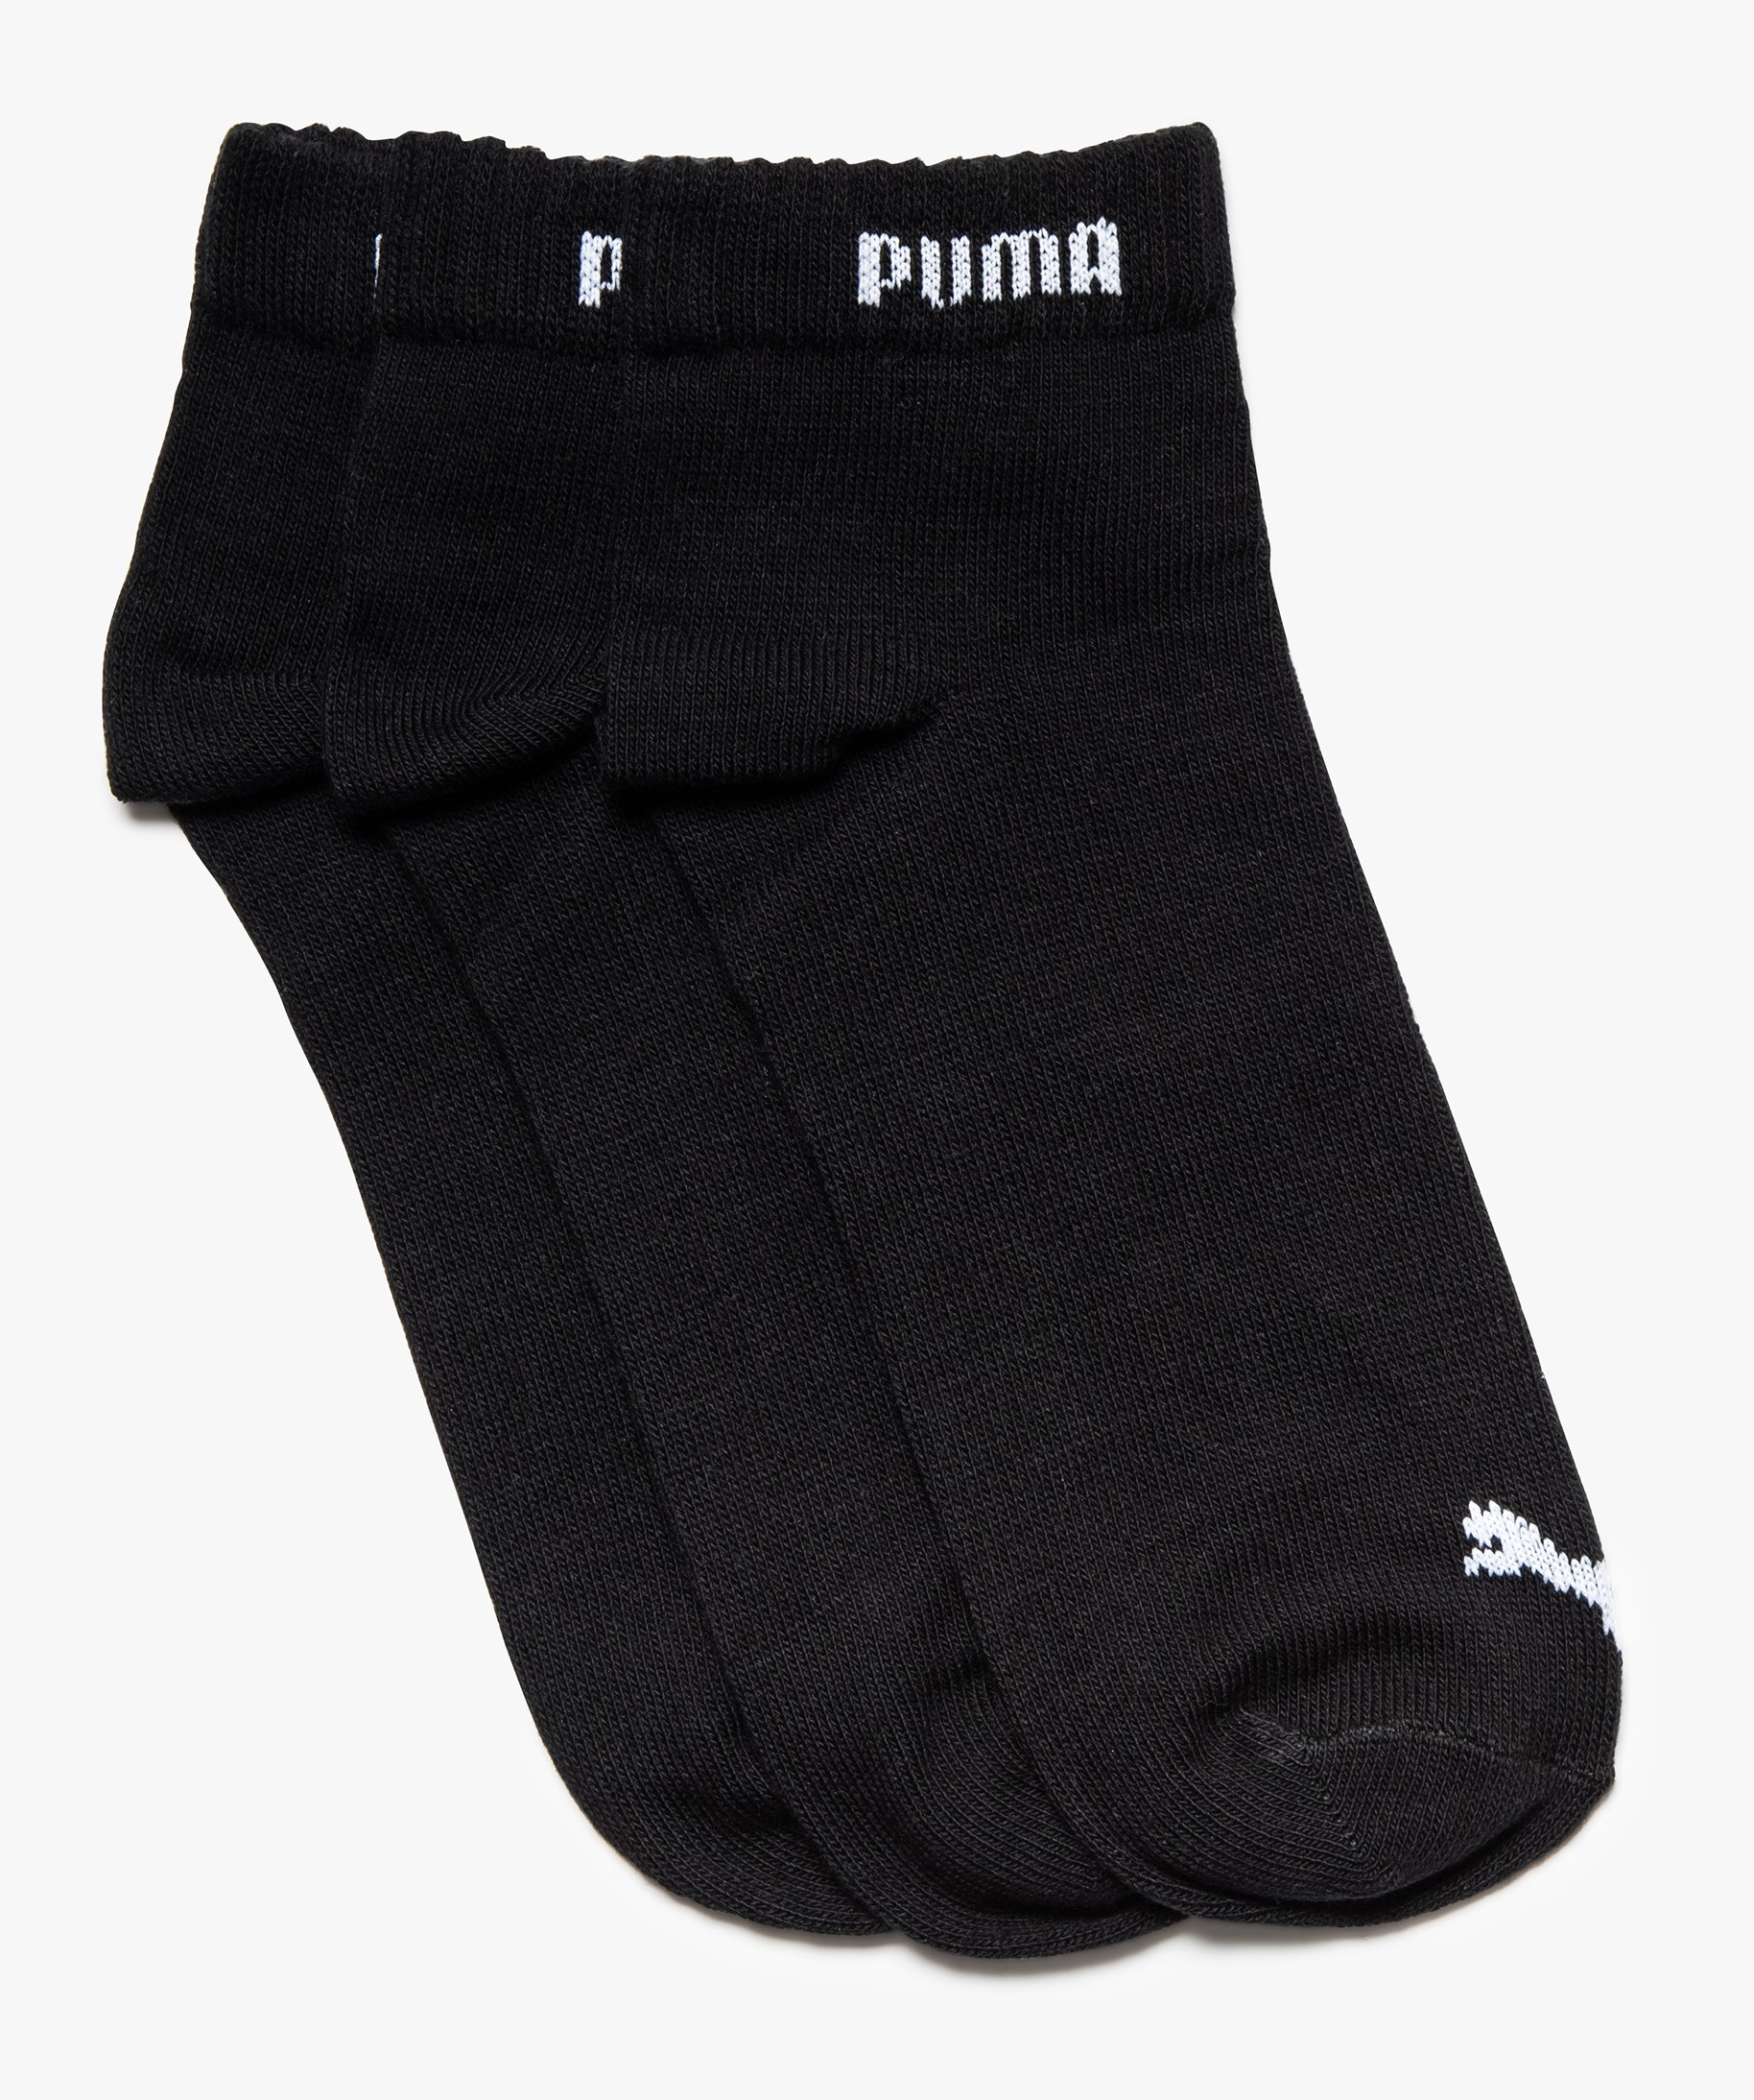 Puma Lot de 3 chaussettes sport noir grande taille